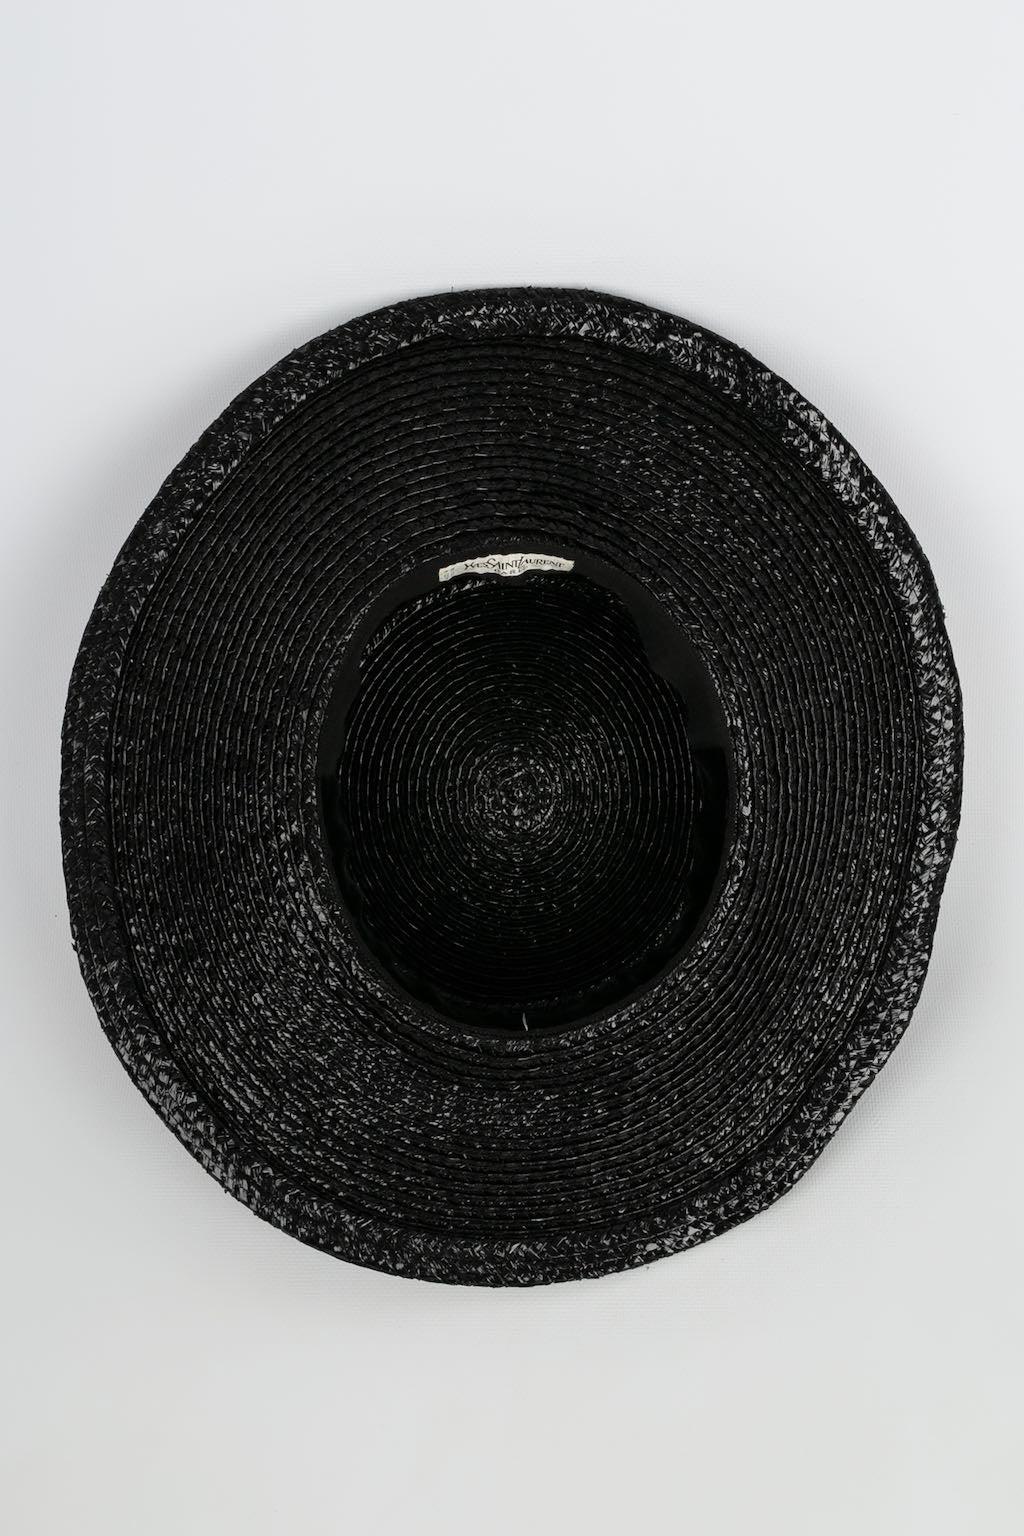 Yves Saint Laurent Sht with Braid Trim Hat For Sale 2